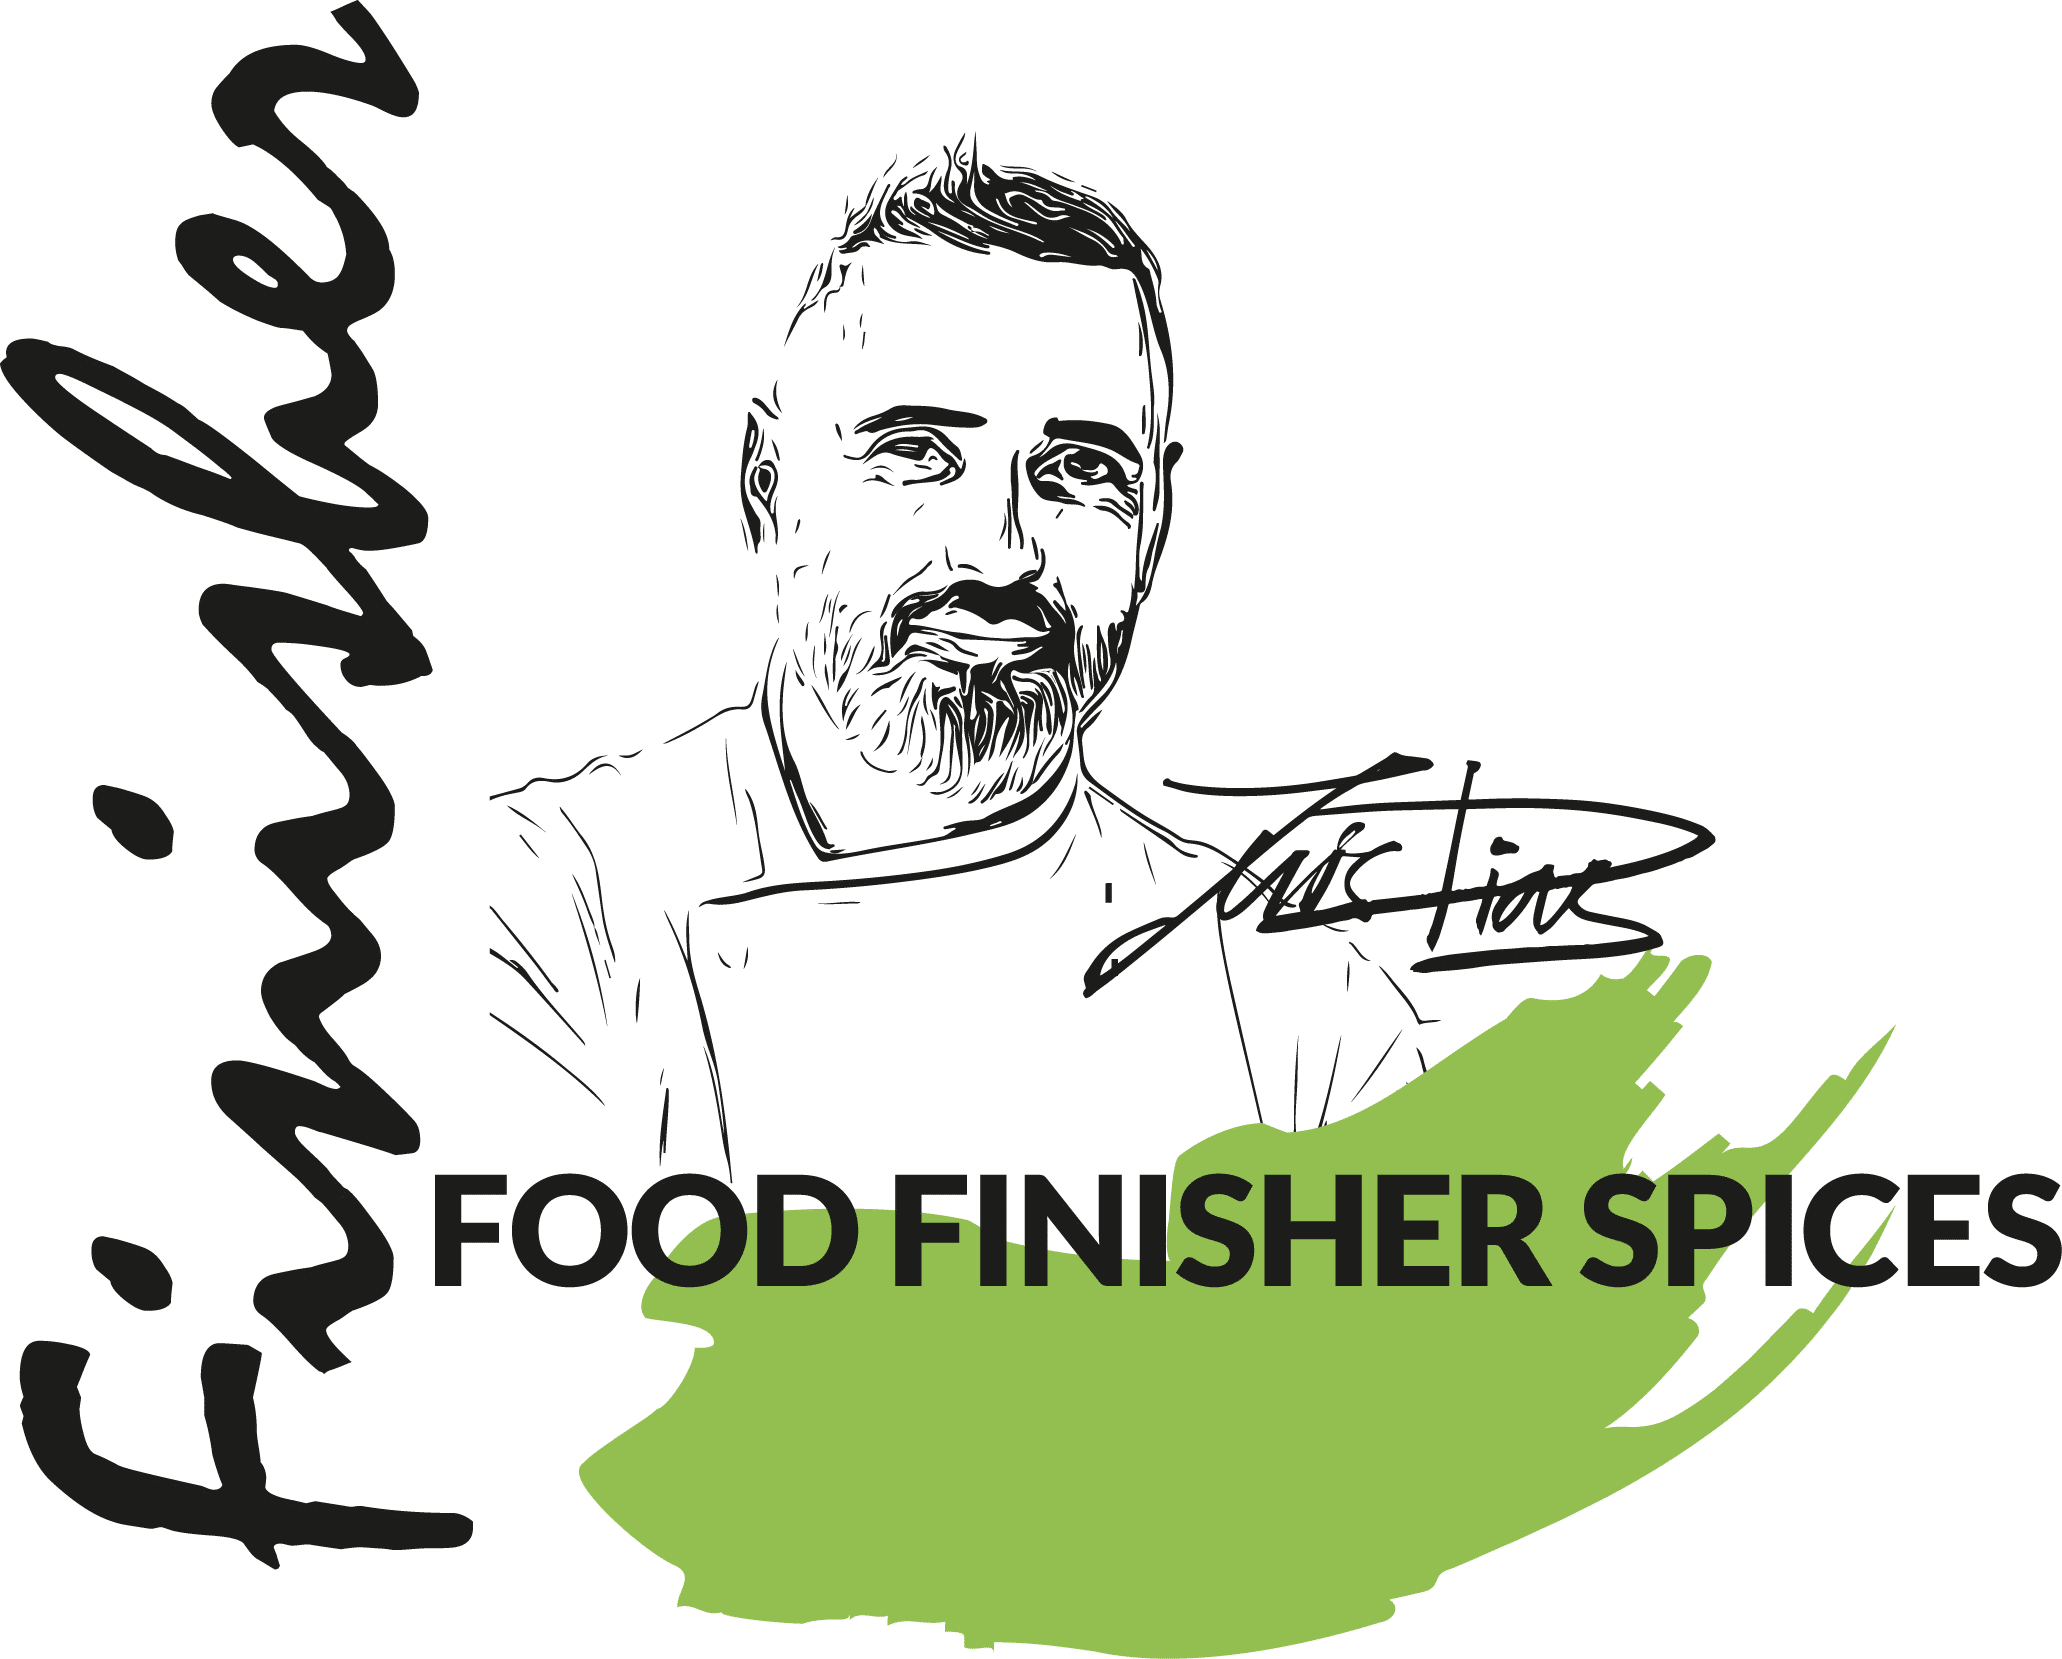 Logo von Food Finisher Spices, mit einer stilisierten Silhouette von Profikoch Luis Dias und seiner Unterschrift. Der Markenname ist prominent in Großbuchstaben dargestellt.